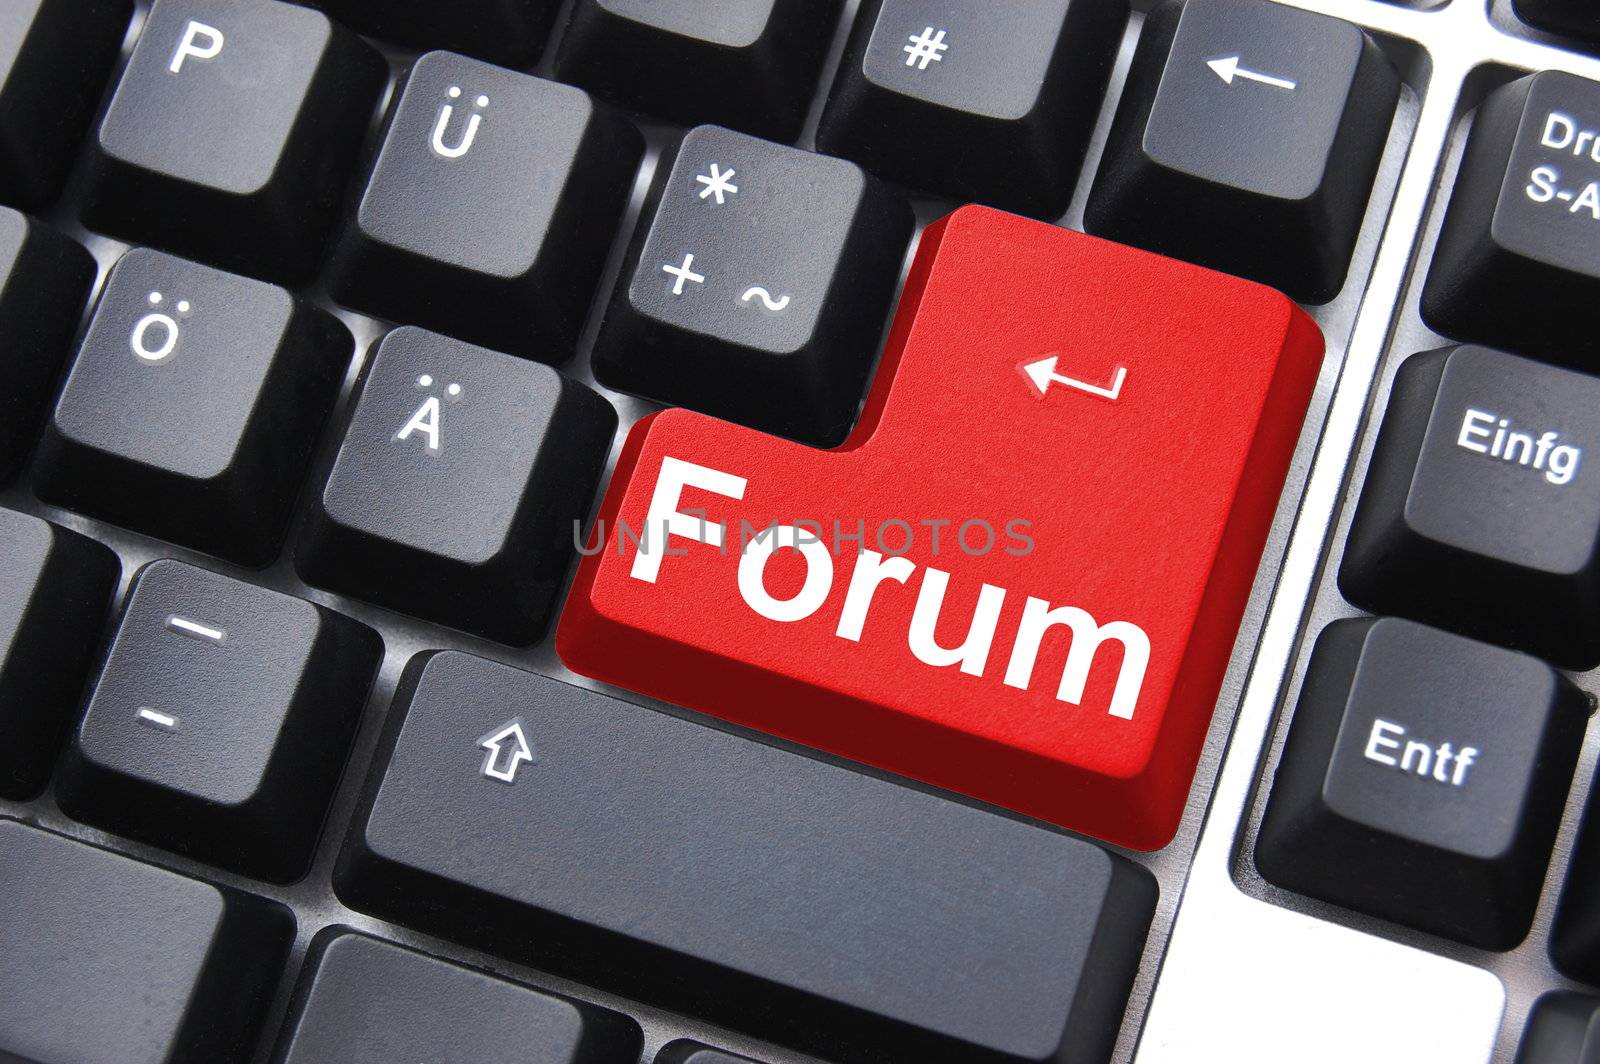 forum button shows concept for internet rss communication